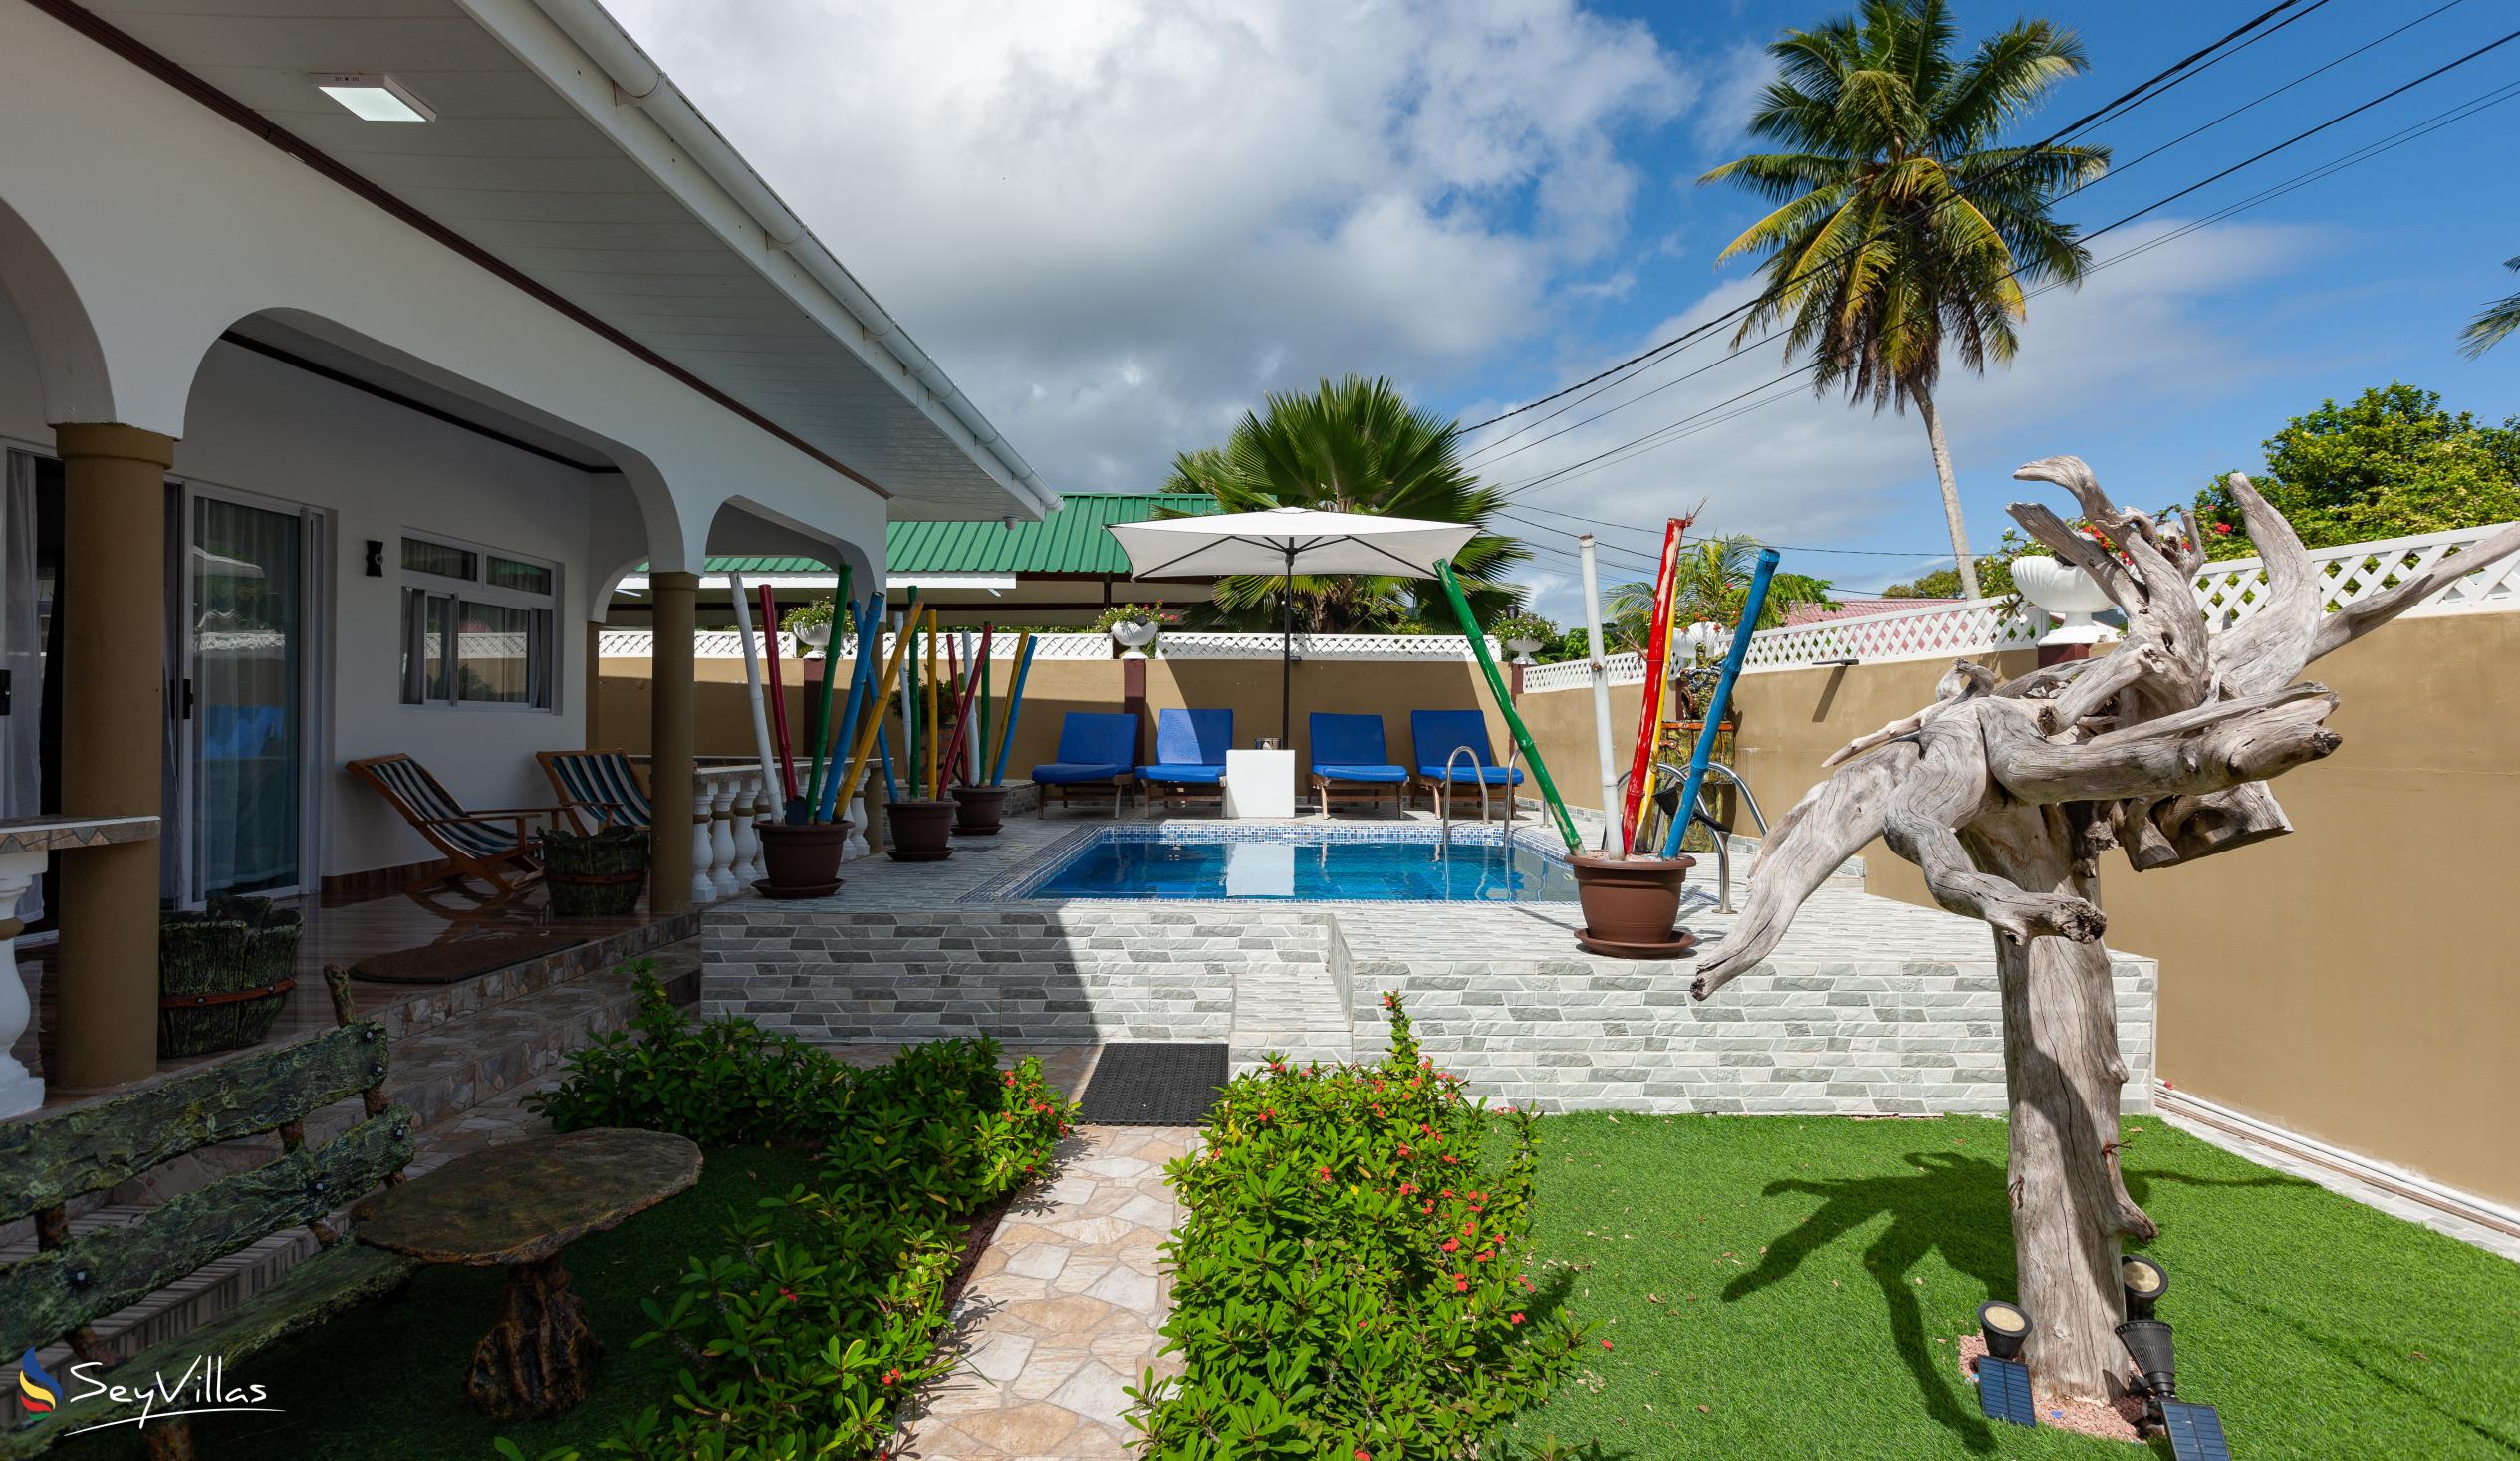 Foto 6: Happy Stay Villa - Aussenbereich - Praslin (Seychellen)